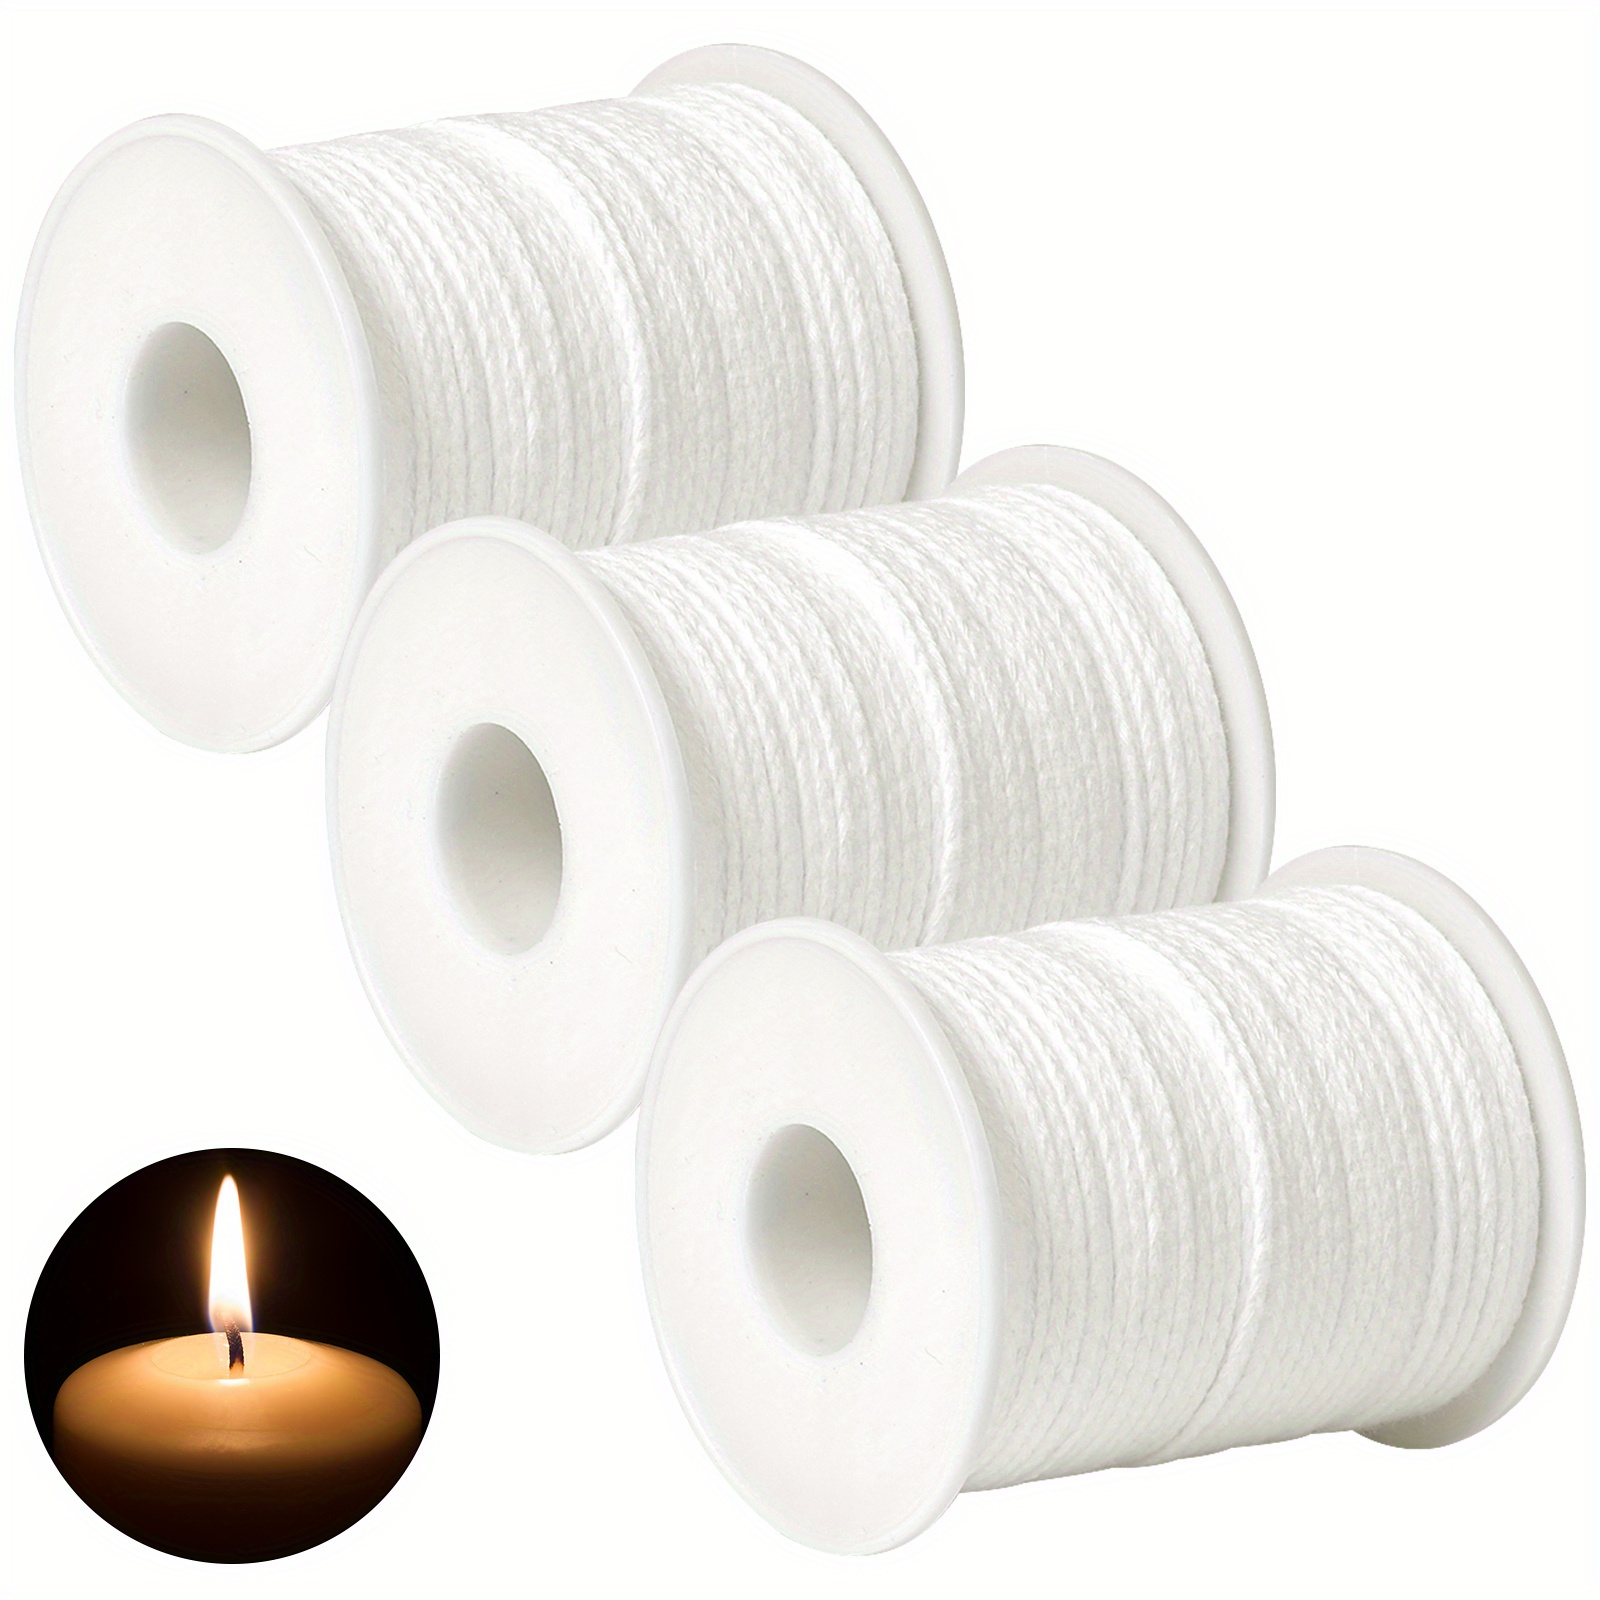 PersonalhomeD Rollo de vela blanca de 200 pies y 61M, mecha de algodón  tejida para manualidades, fabricación de velas, lámparas de aceite sin  humo, 1 rollo 